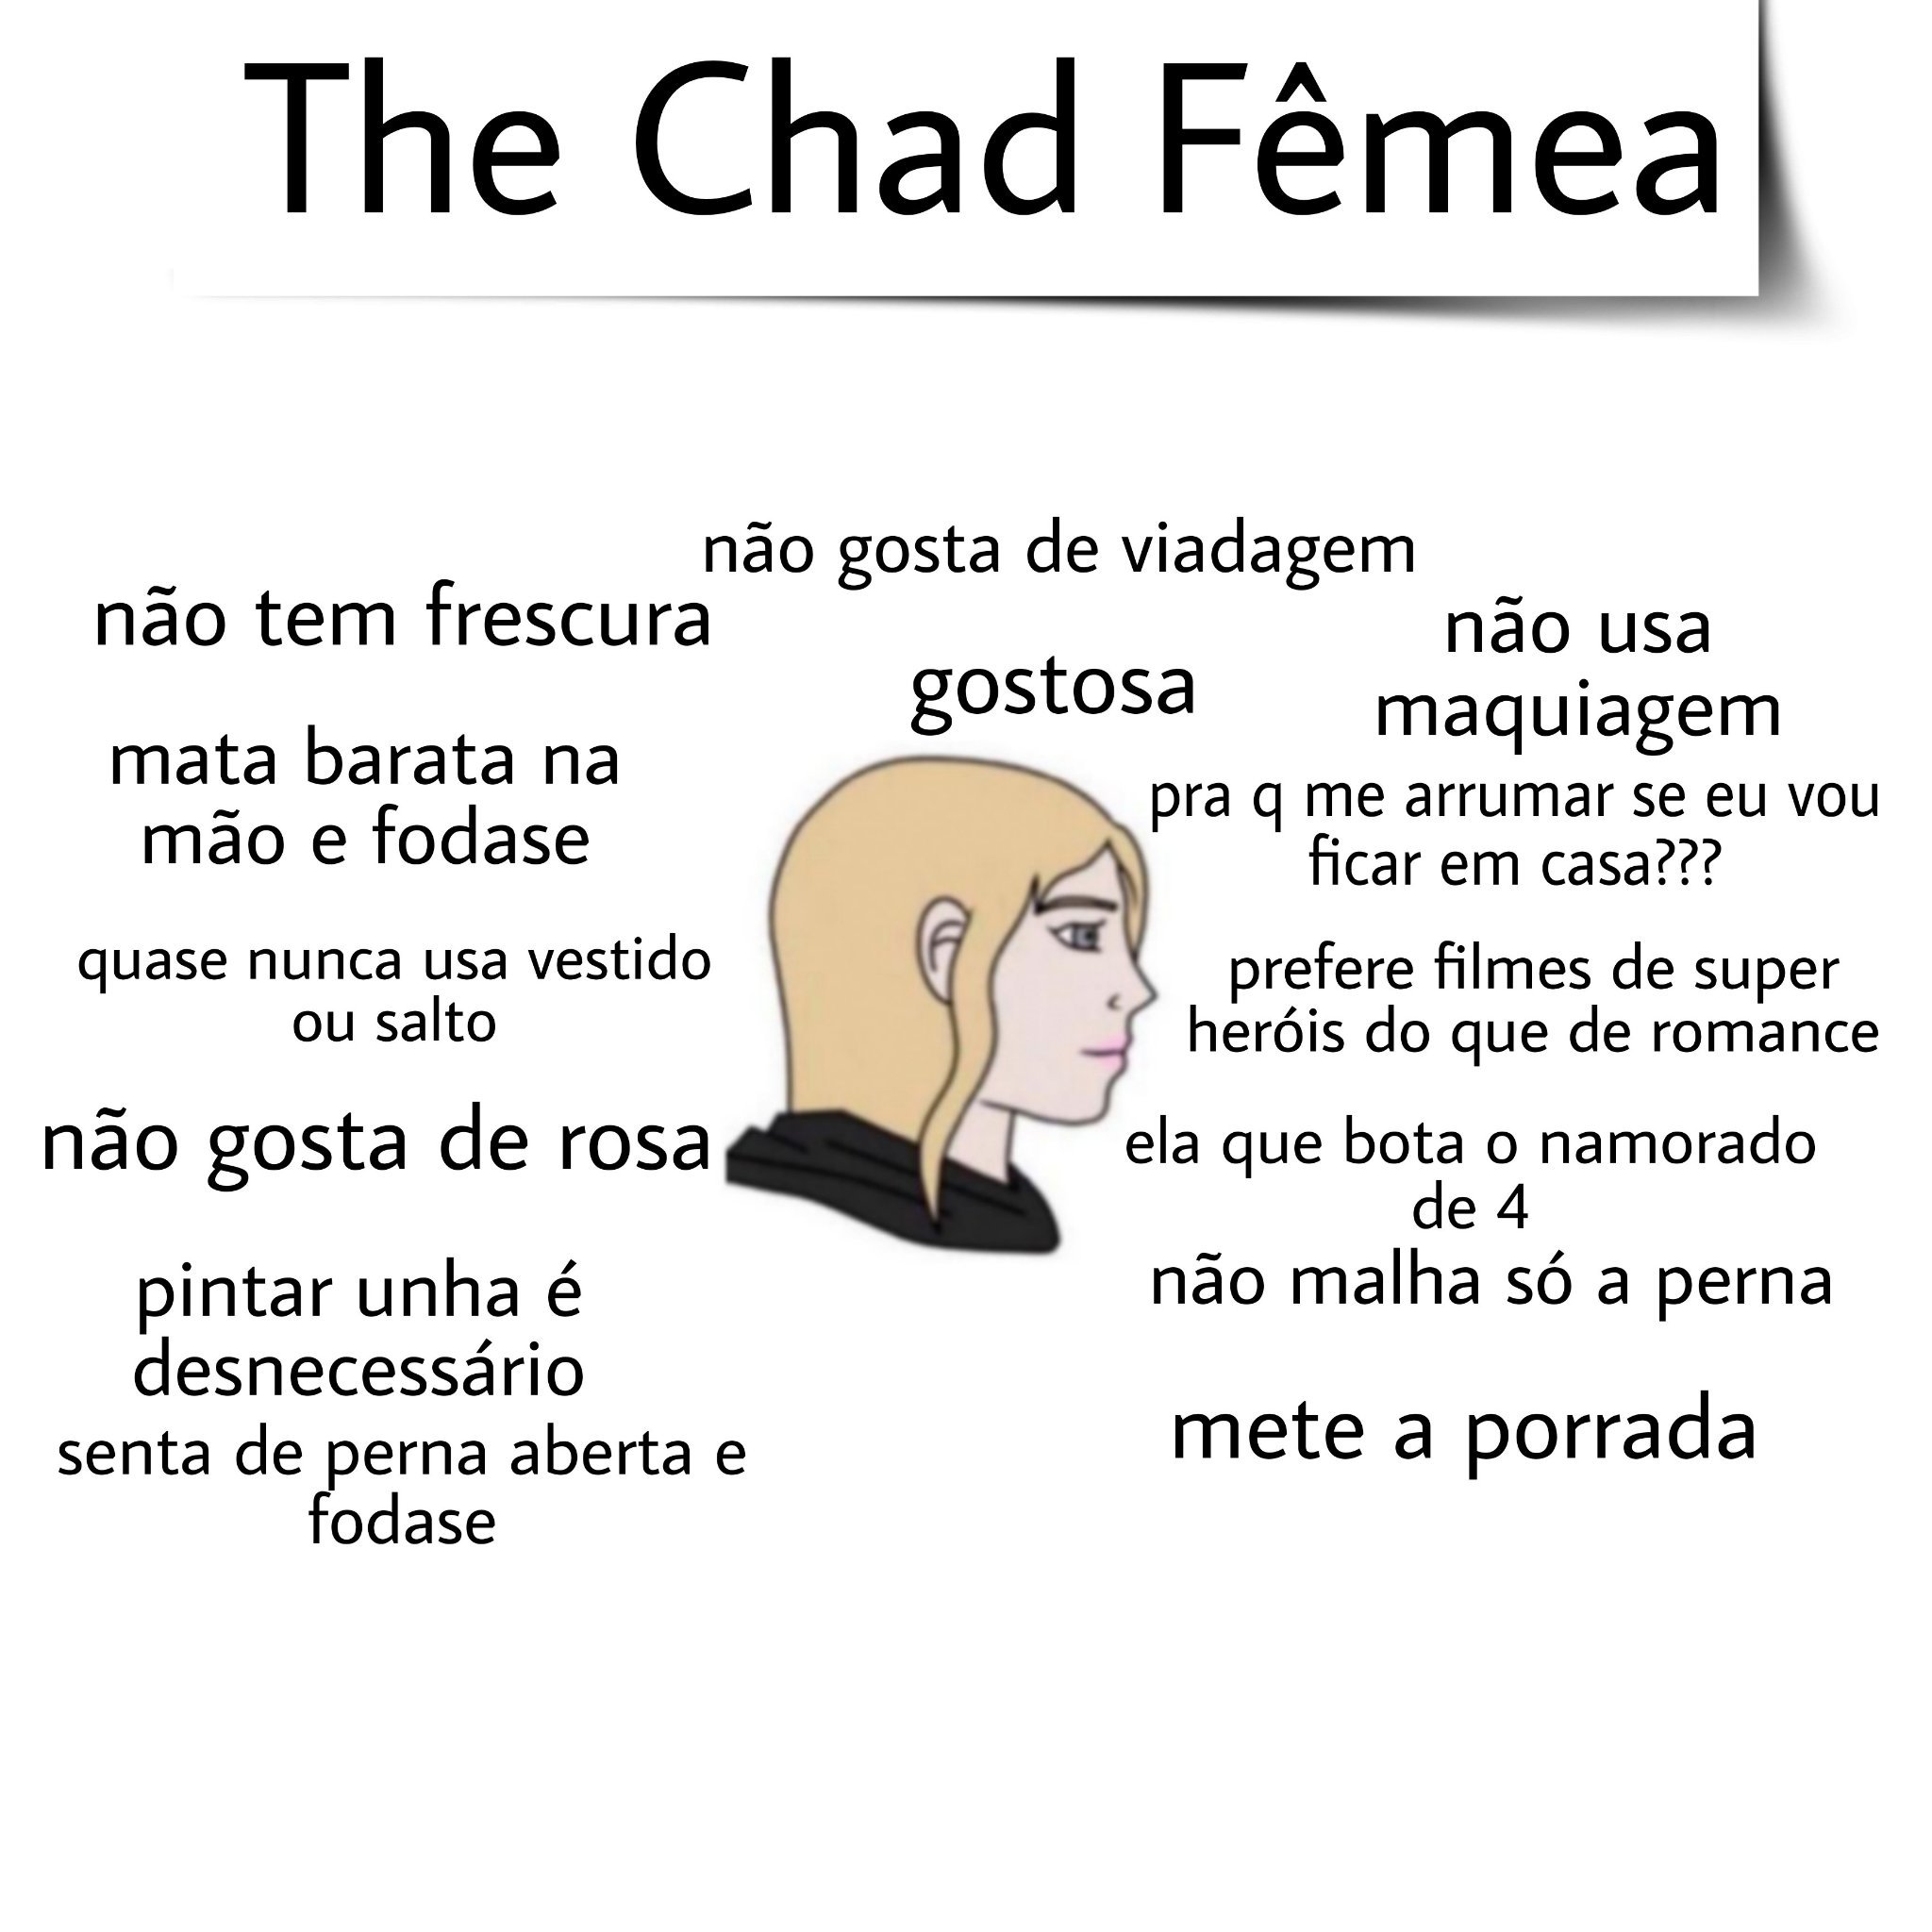 The Chad Fêmea - meme